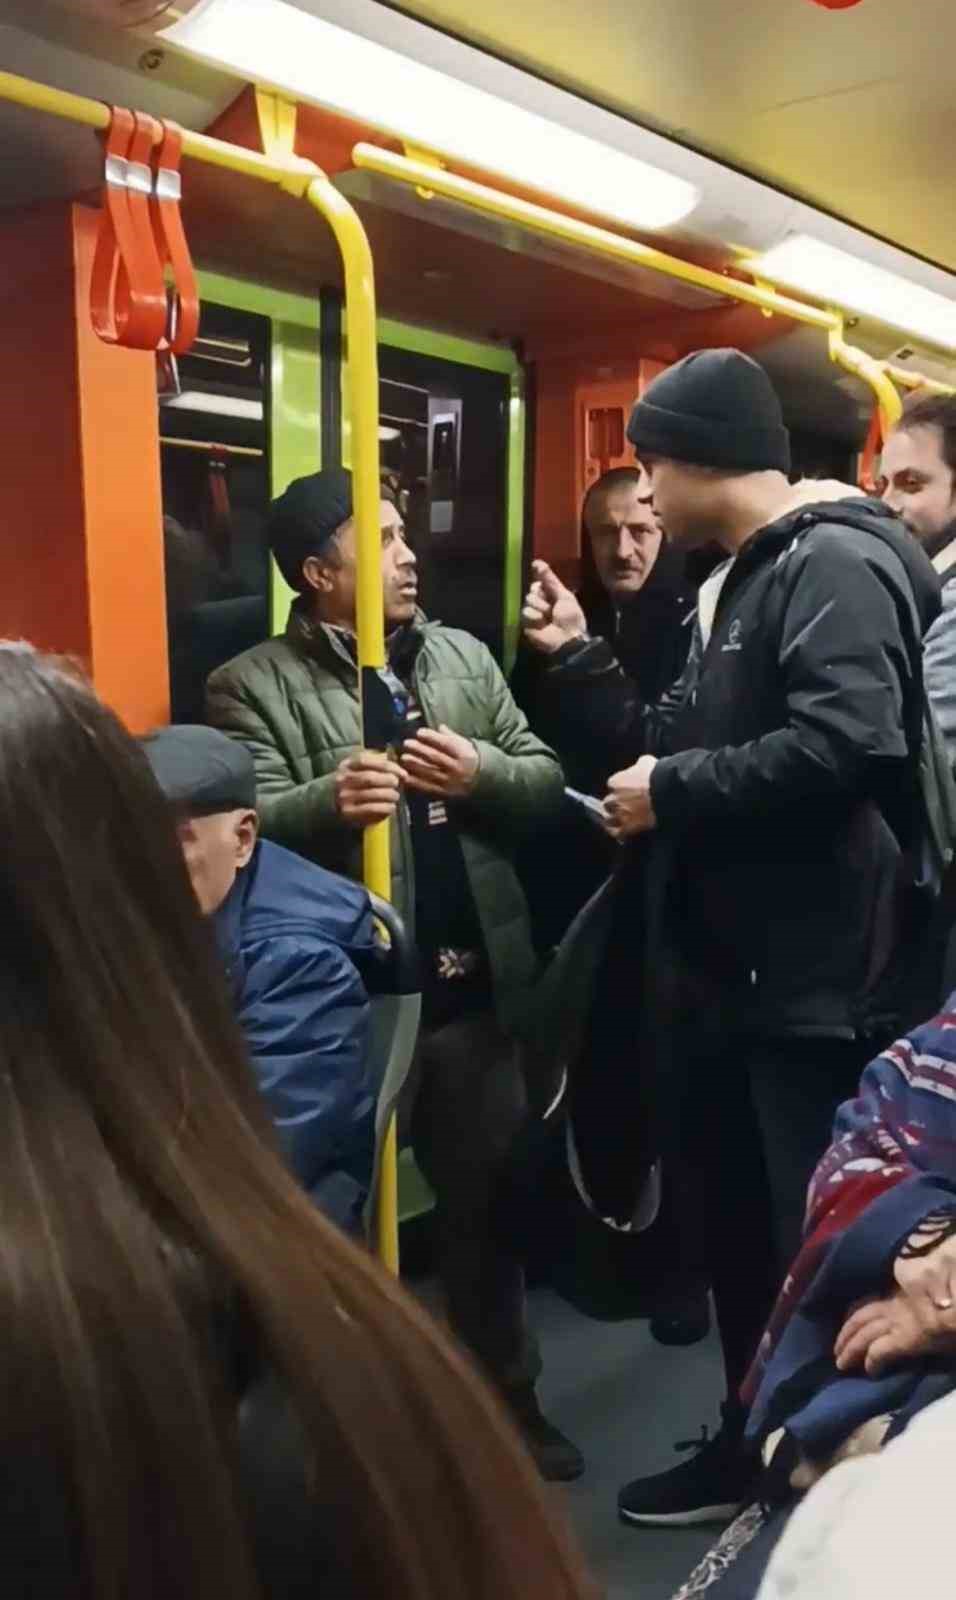 Metroda müzik çalarak para toplayan gençler ile vatandaşlar arasında tartışma çıktı